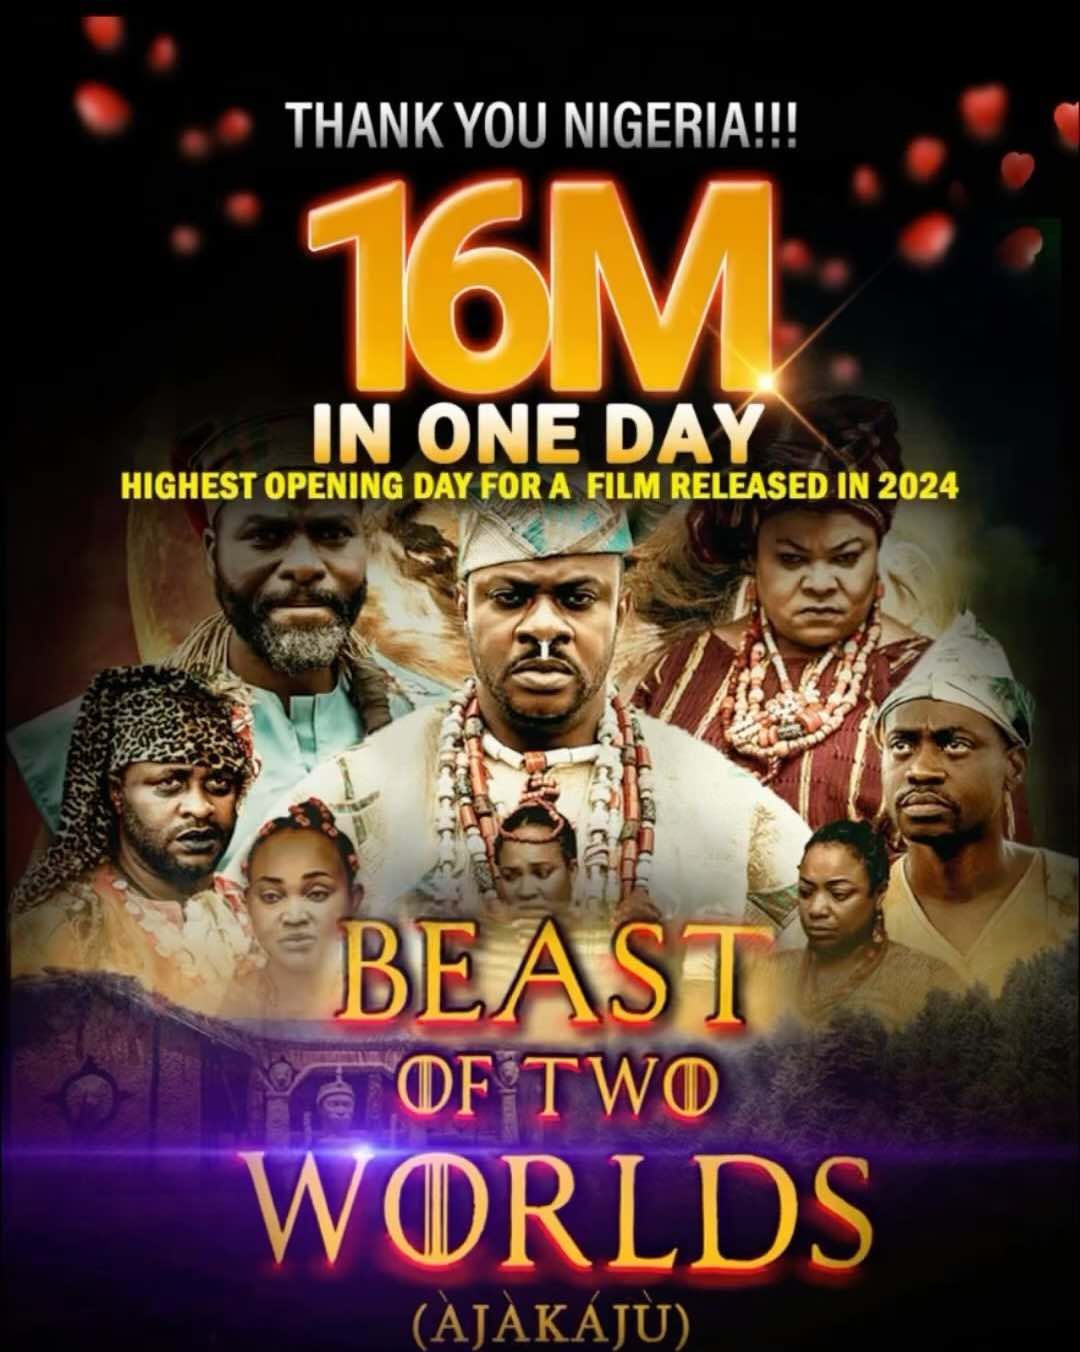 Eniola Ajao grata quando 'Beast of Two Worlds' atinge 16 milhões no primeiro dia